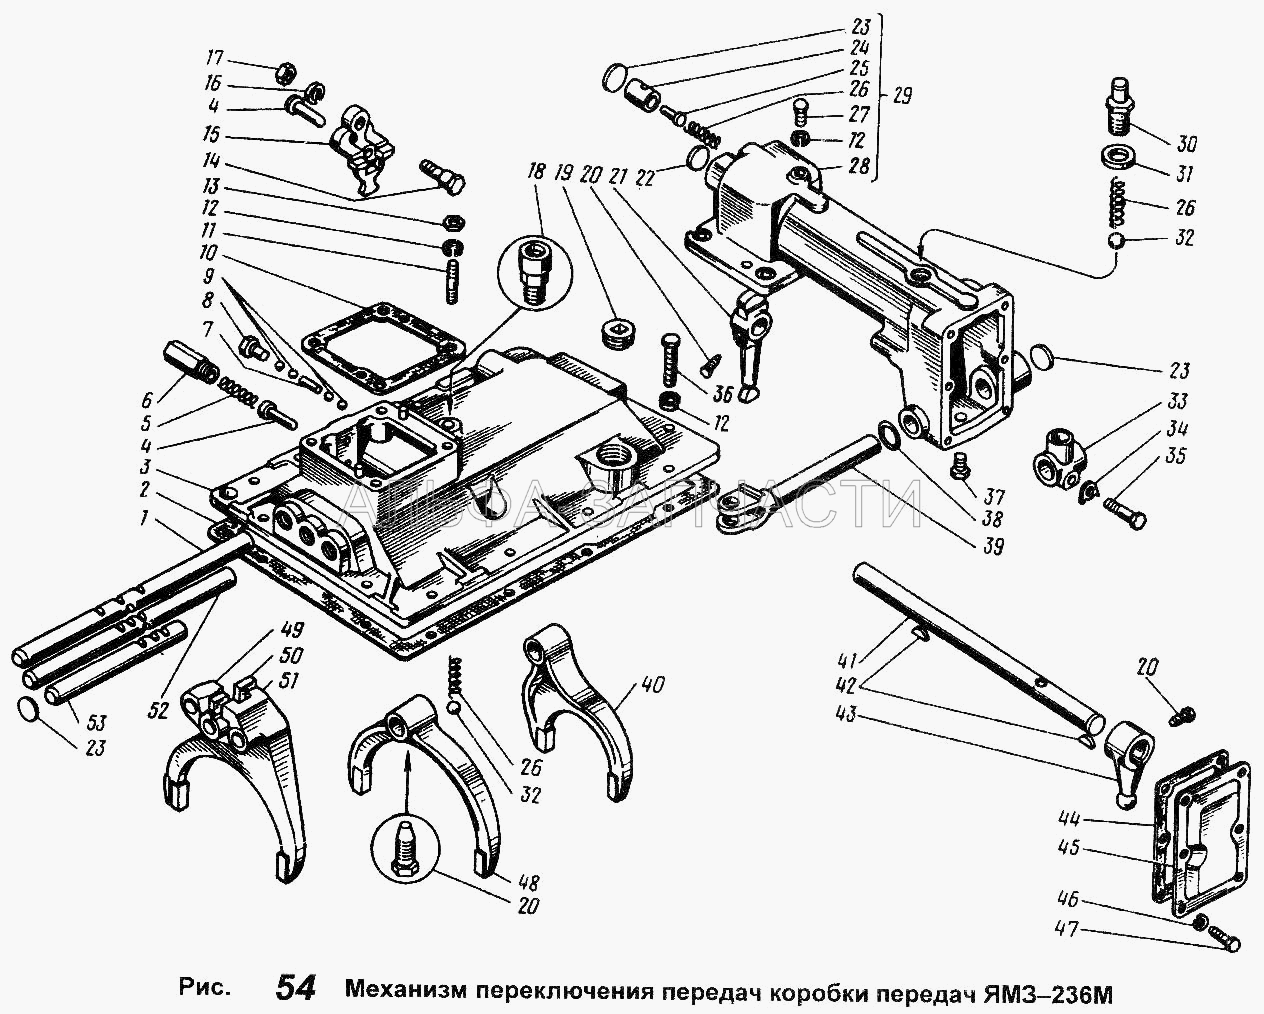 Механизм переключения передач коробки передач ЯМЗ-236М (252135-П2 Шайба пружинная) 